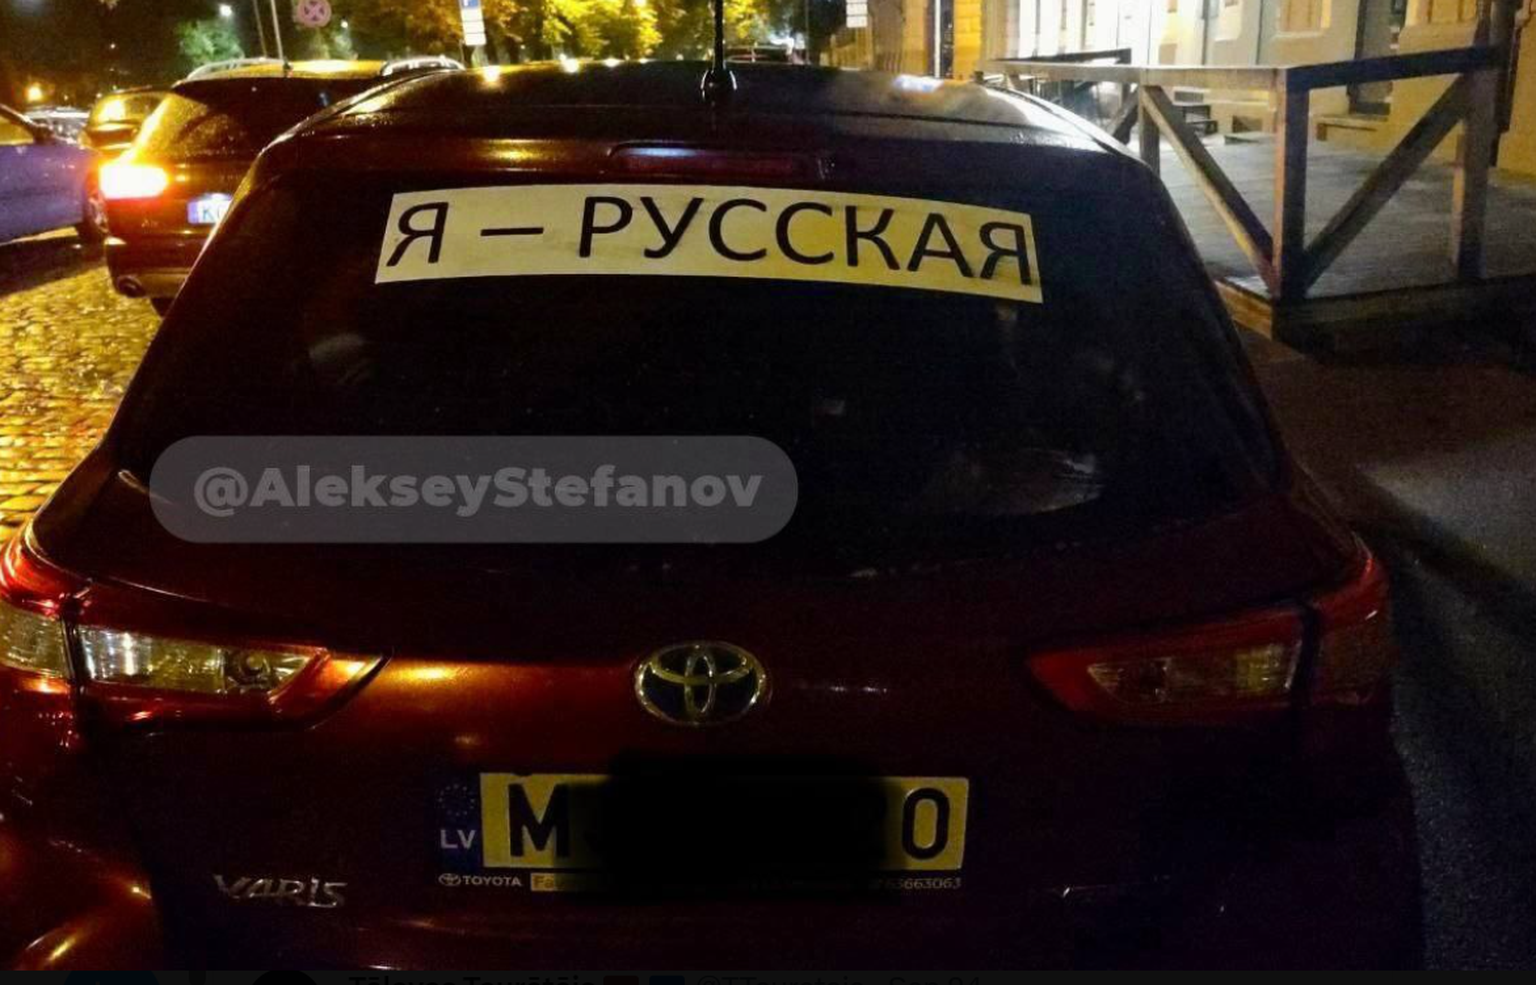 Автомобиль с надписью "Я русская" появились и в Латвии. Фото: Tālavas Taurētājs/"X"